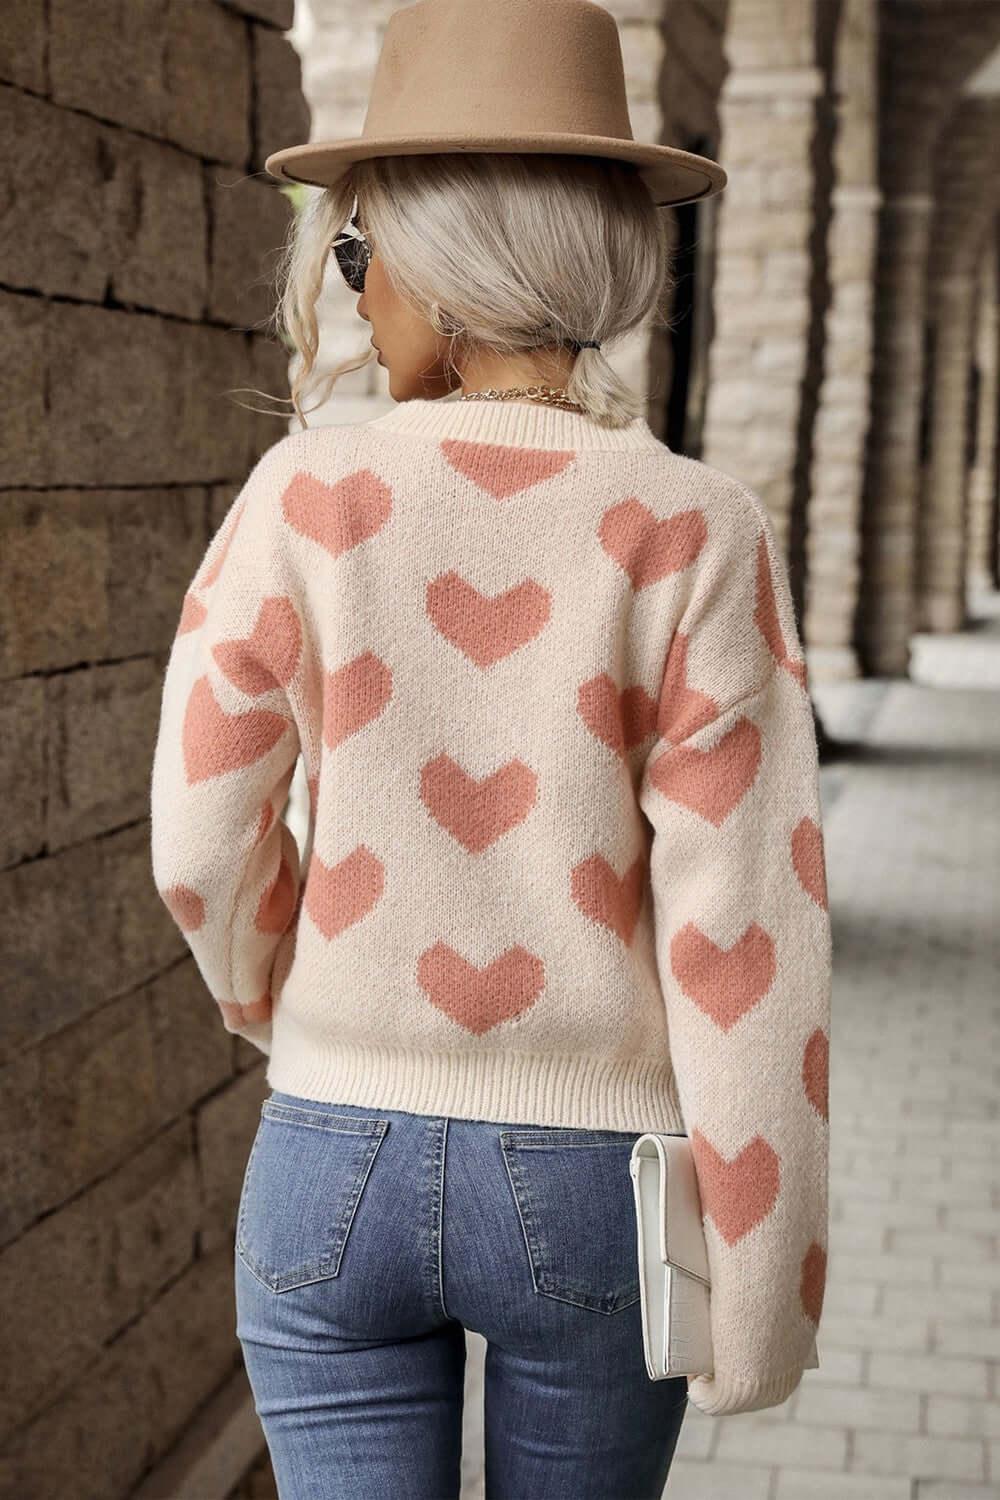 Heart Pattern Drop Shoulder Sweater -Women’s sweaters#Firefly Lane Boutique1